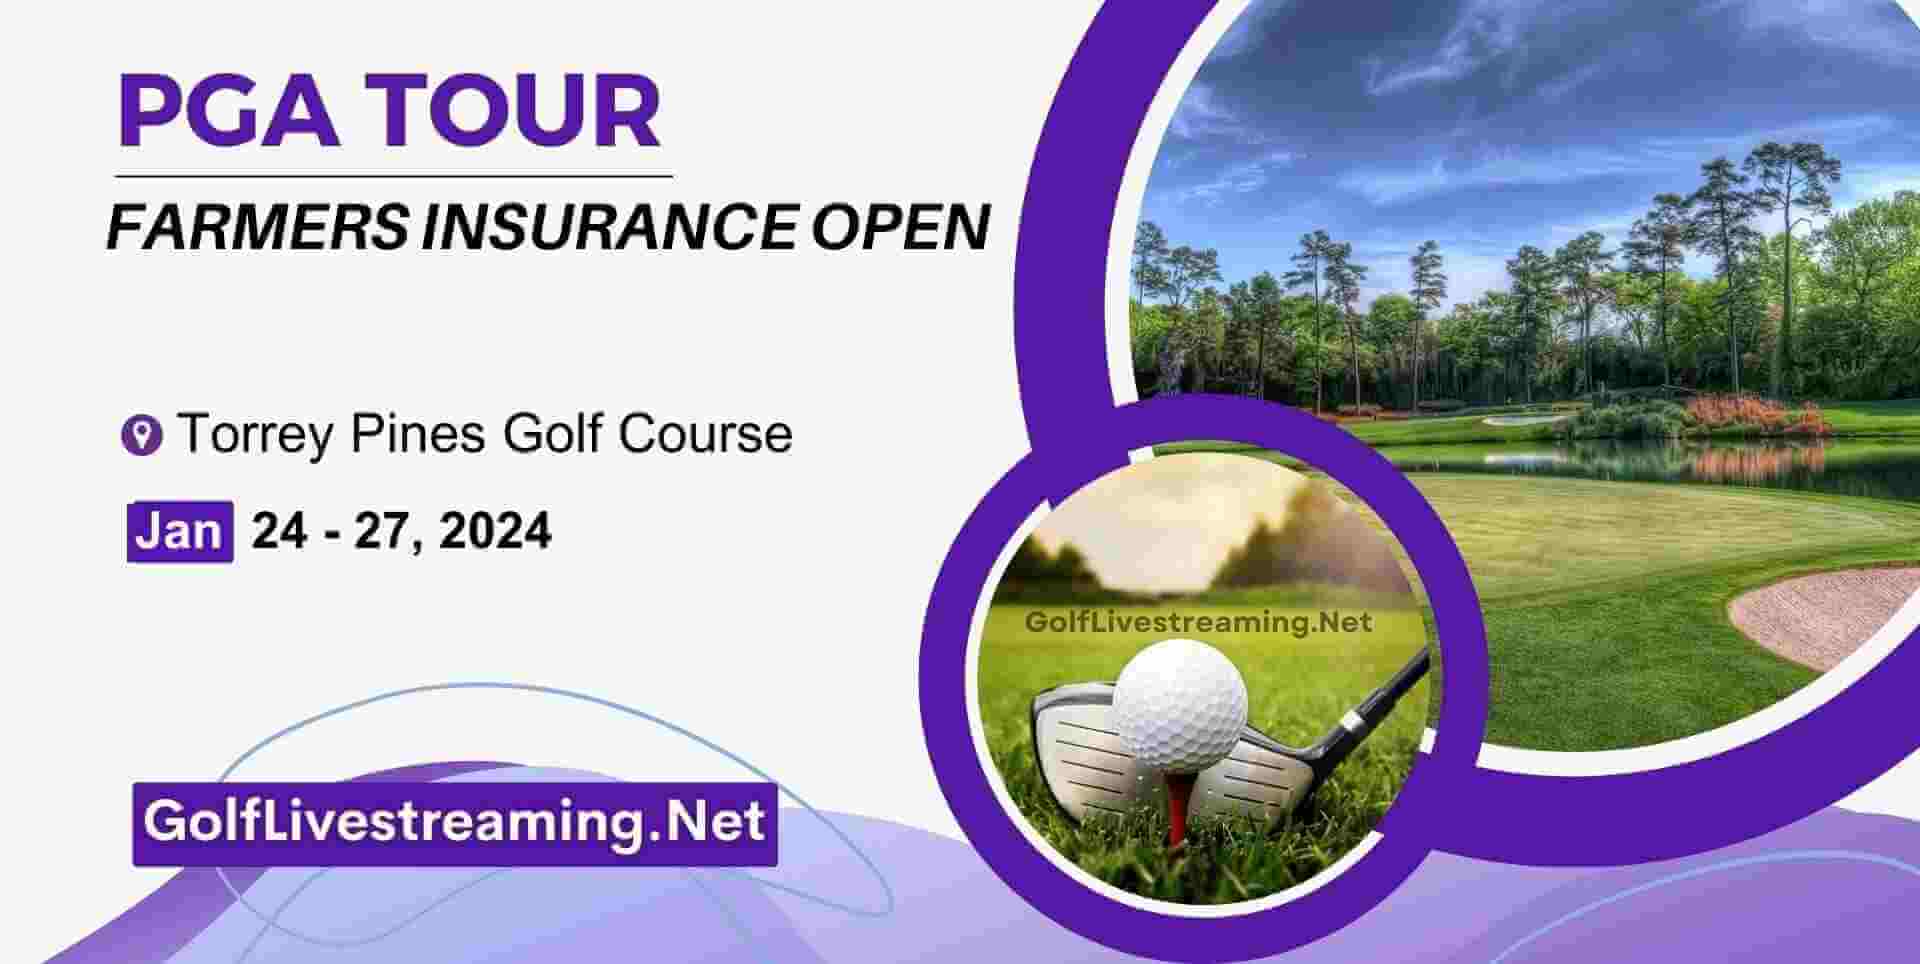 Farmers Insurance Open 2019 Golf Tournament